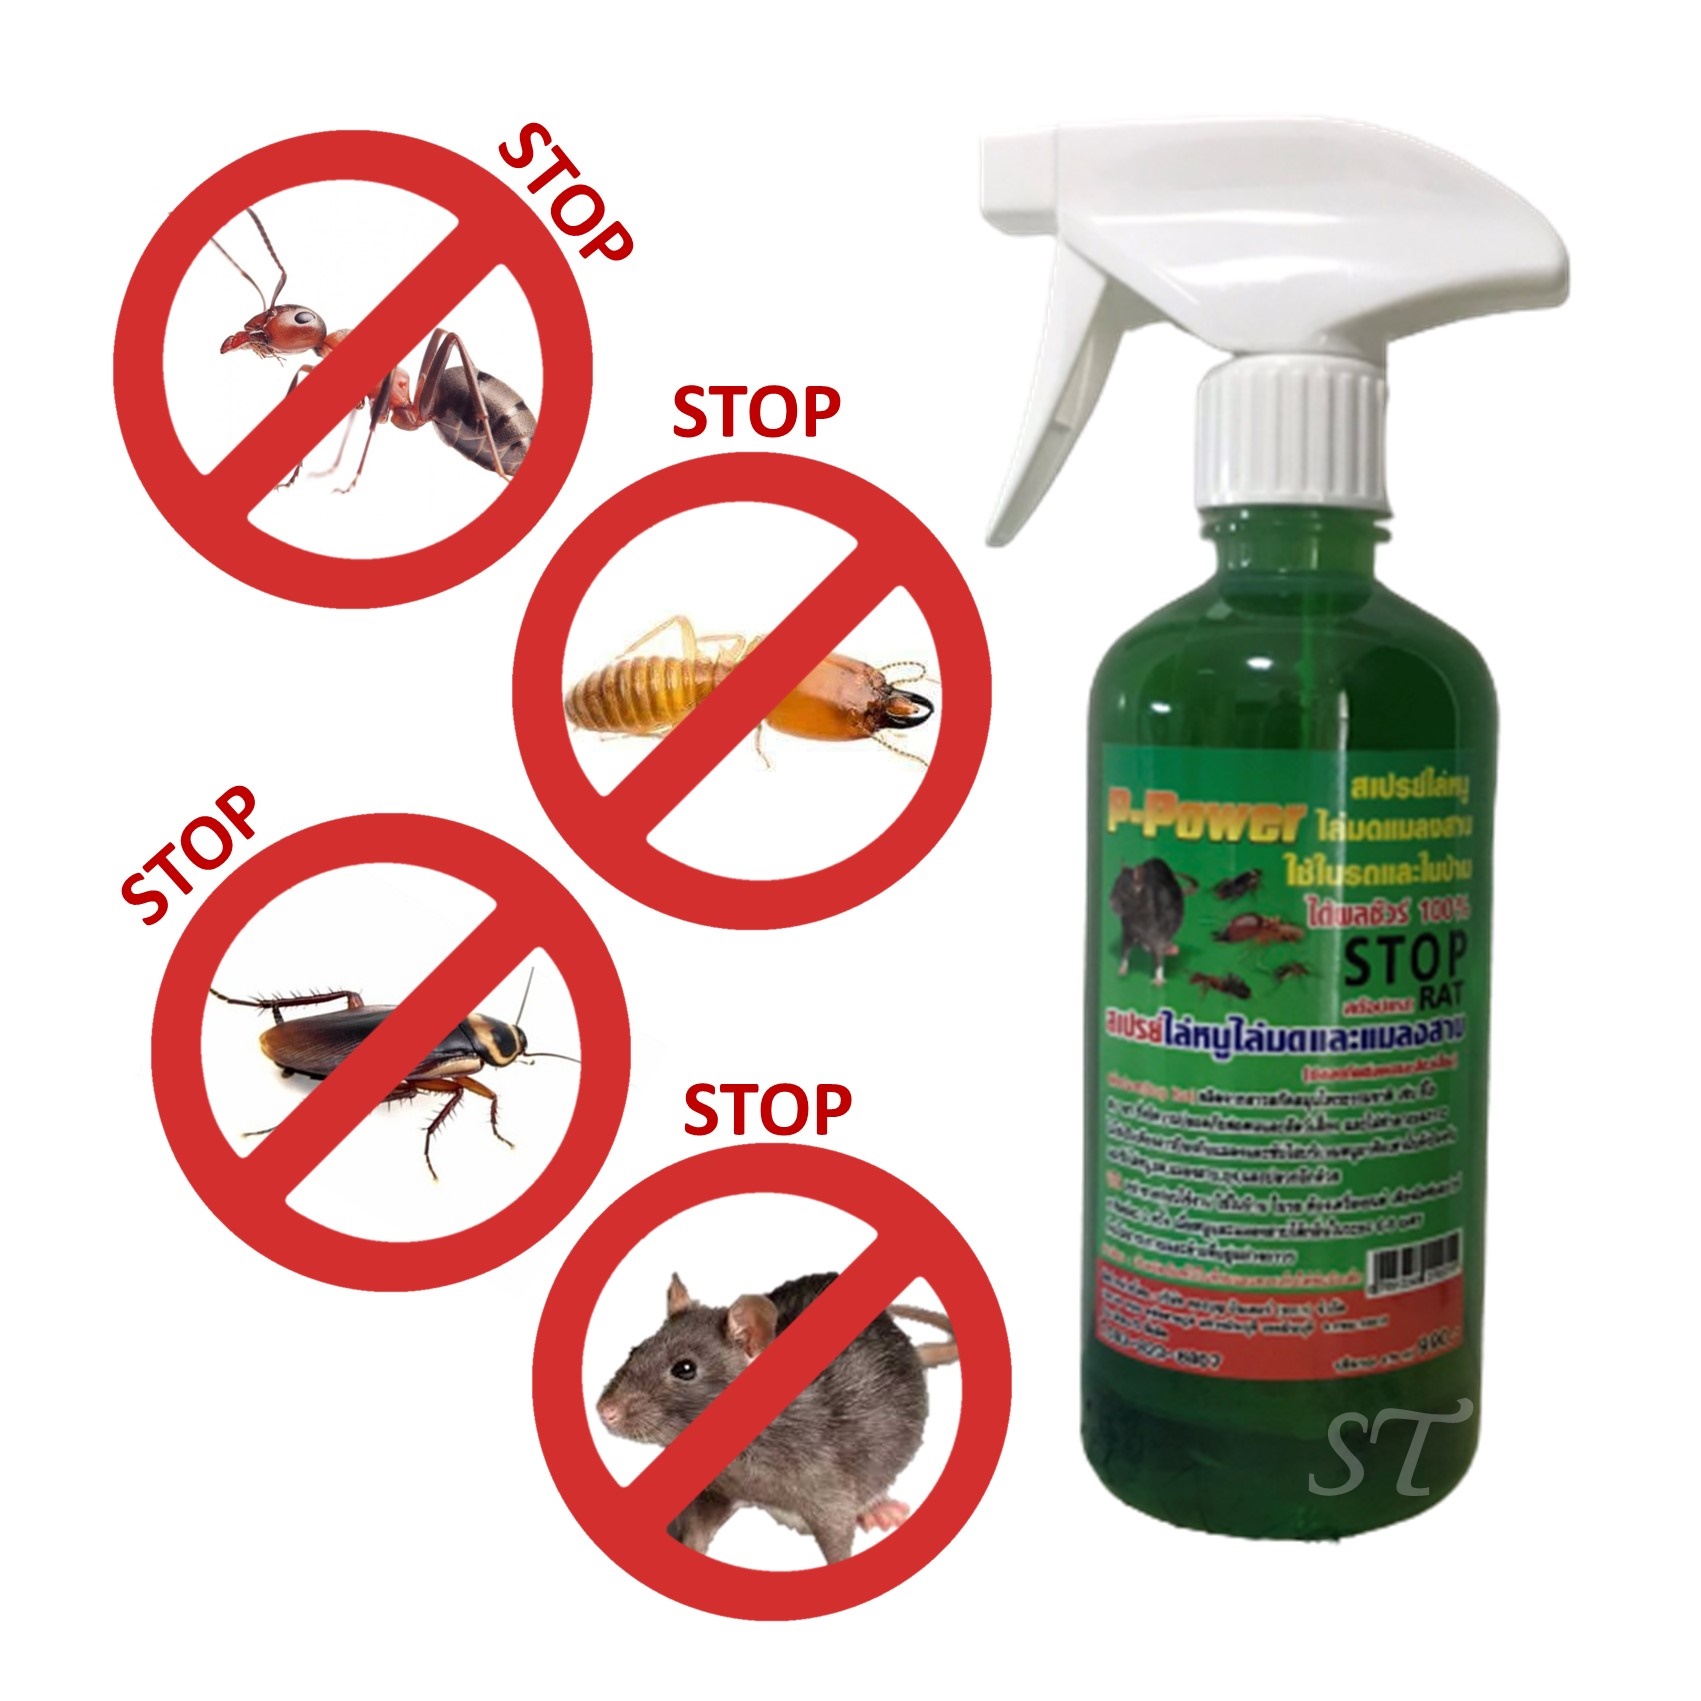 [ขนาด 1 ขวด 475 ml] สต๊อปแรท (Stop Rat) สเปรย์สมุนไพรฉีดไล่หนู ปลวก มด แมลงสาบ ใช้ใด้ทั้งในรถ ในบ้าน และในห้องครัว... (จัดส่ง Kerry เก็บปลายทางได้)